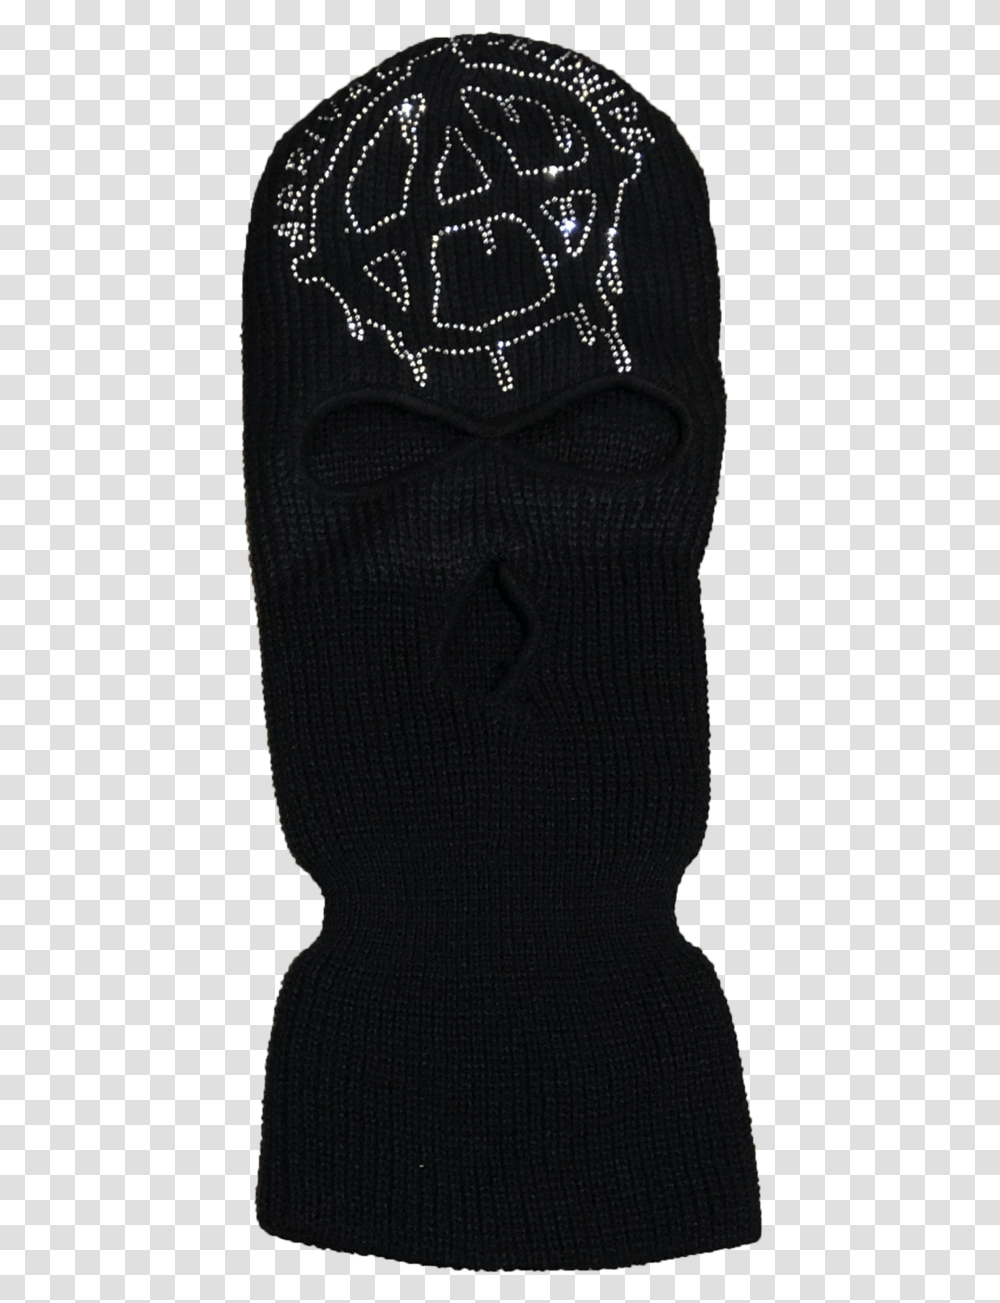 Black Ski Mask Sock, Tie, Sand, Outdoors Transparent Png